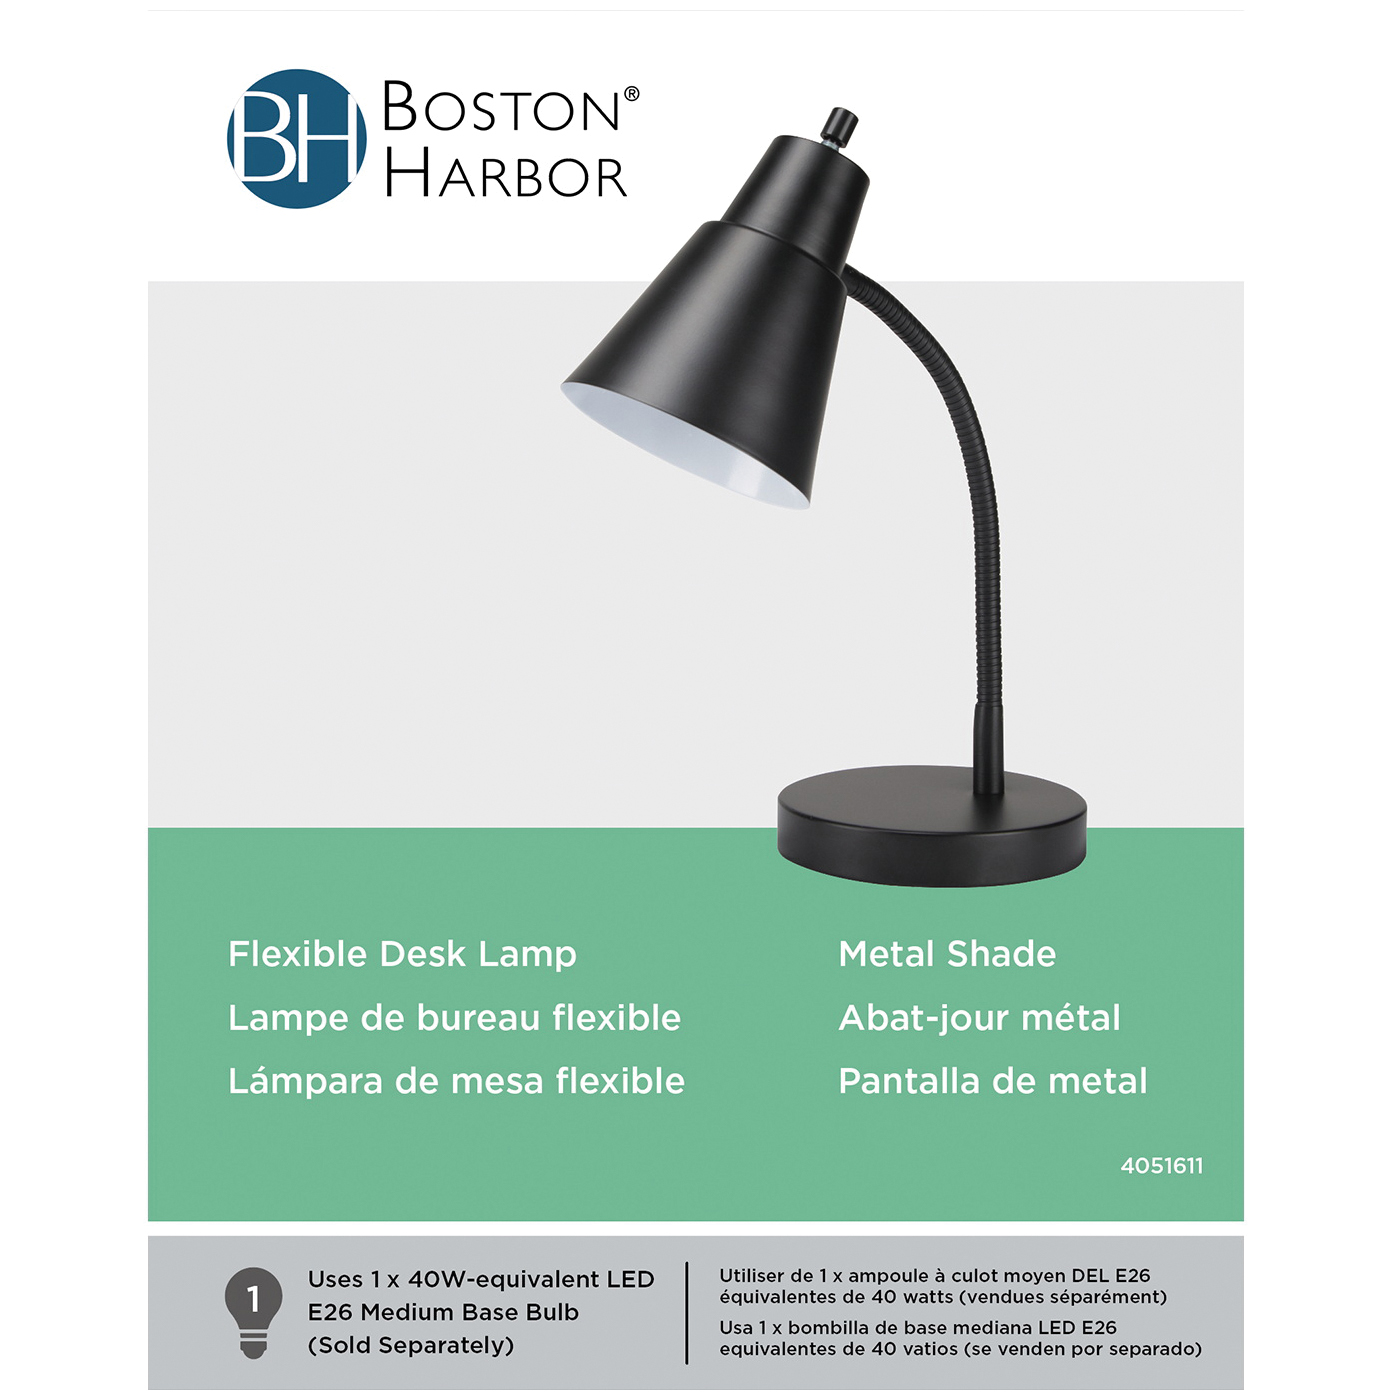 Boston Harbor TL-TB-170-BK-3L Flexible Desk Lamp, 120 V, 60 W, 1-Lamp, CFL Lamp, Black Fixture, Black - 2